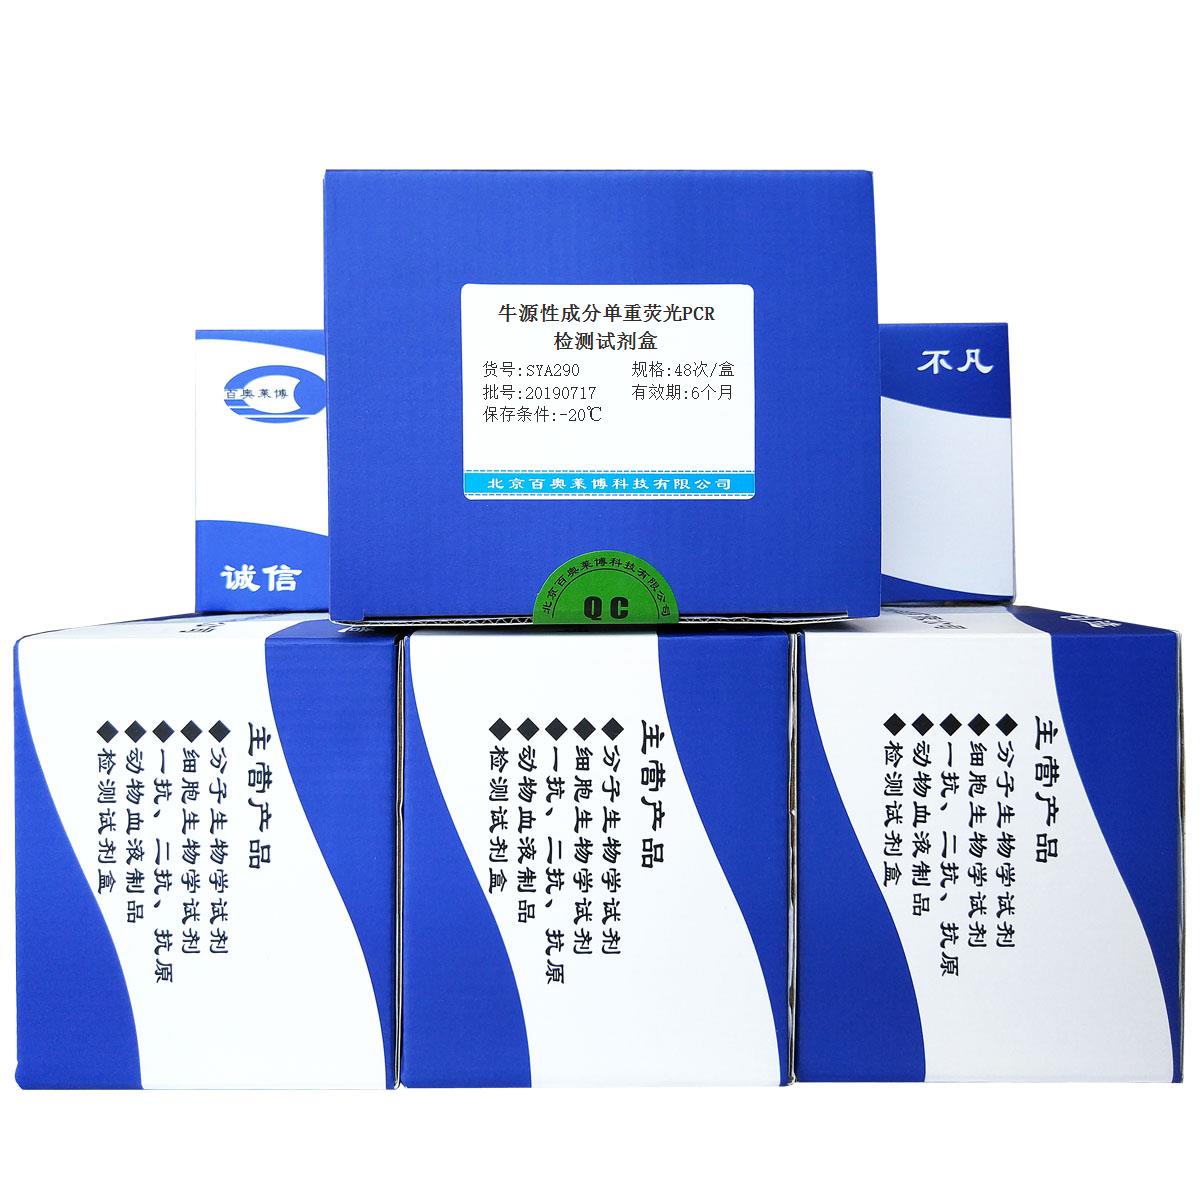 牛源性成分单重荧光PCR检测试剂盒优惠促销